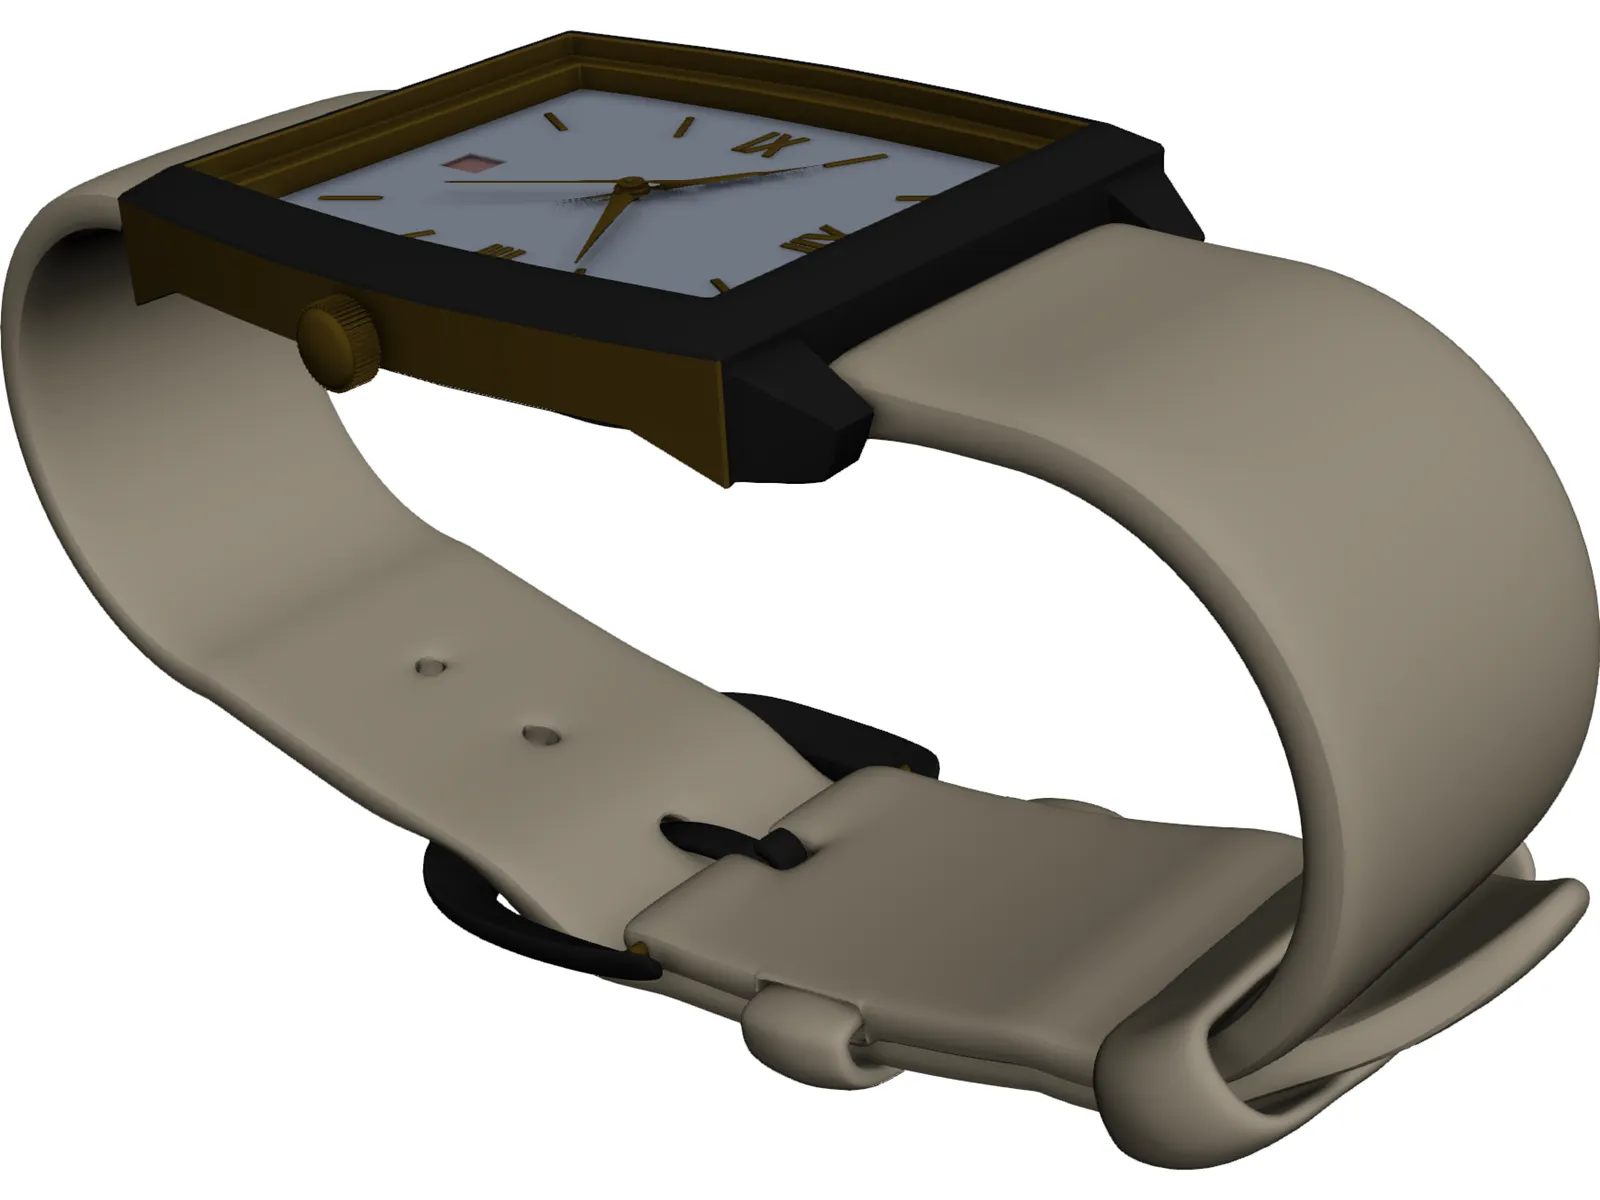 Wrist Watch 3D Model